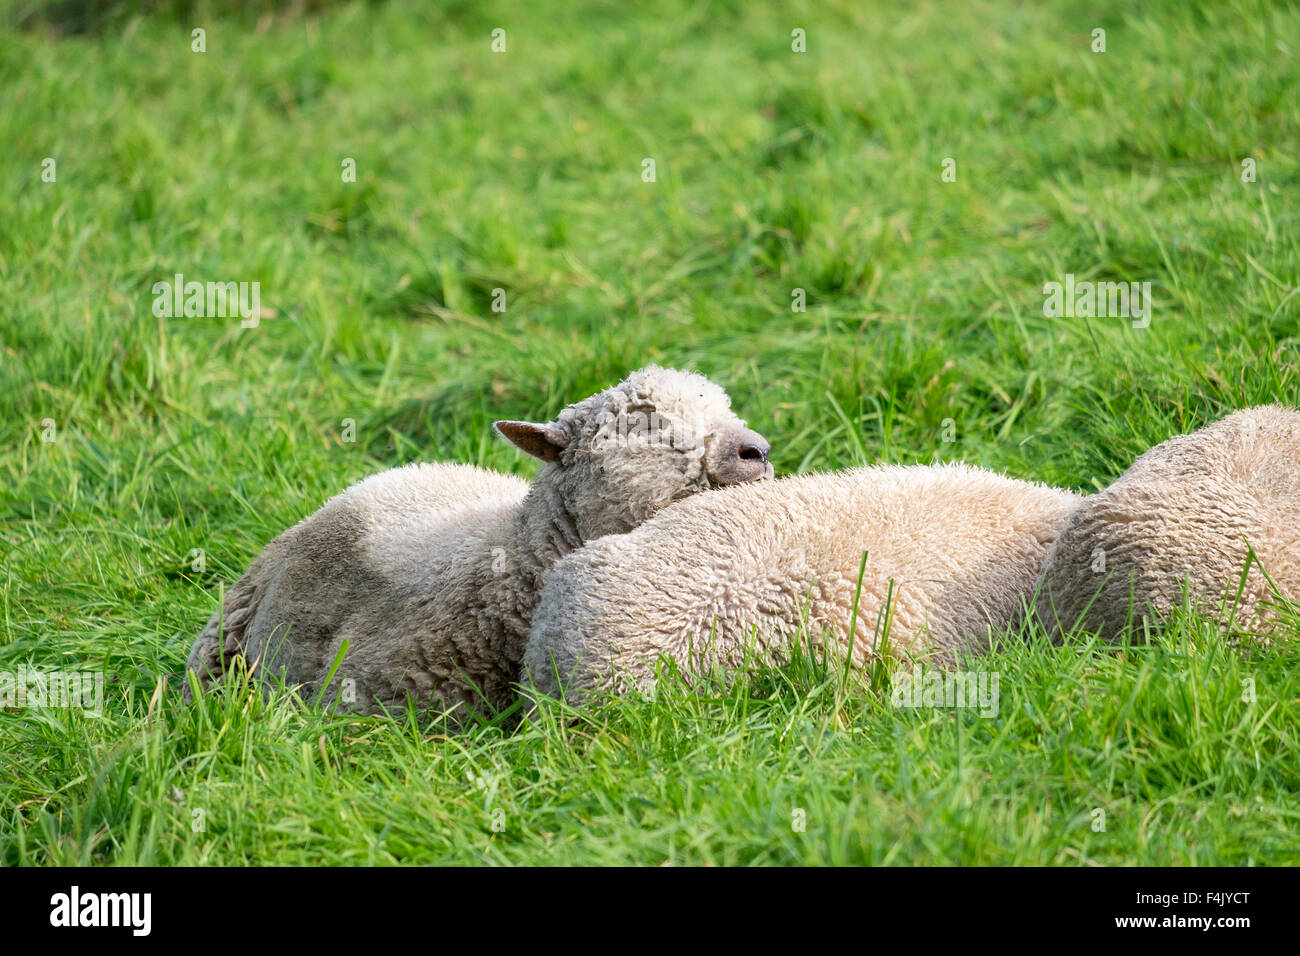 Sussex ovejas descansando bajo el sol en un exuberante y verde pasto. Foto de stock